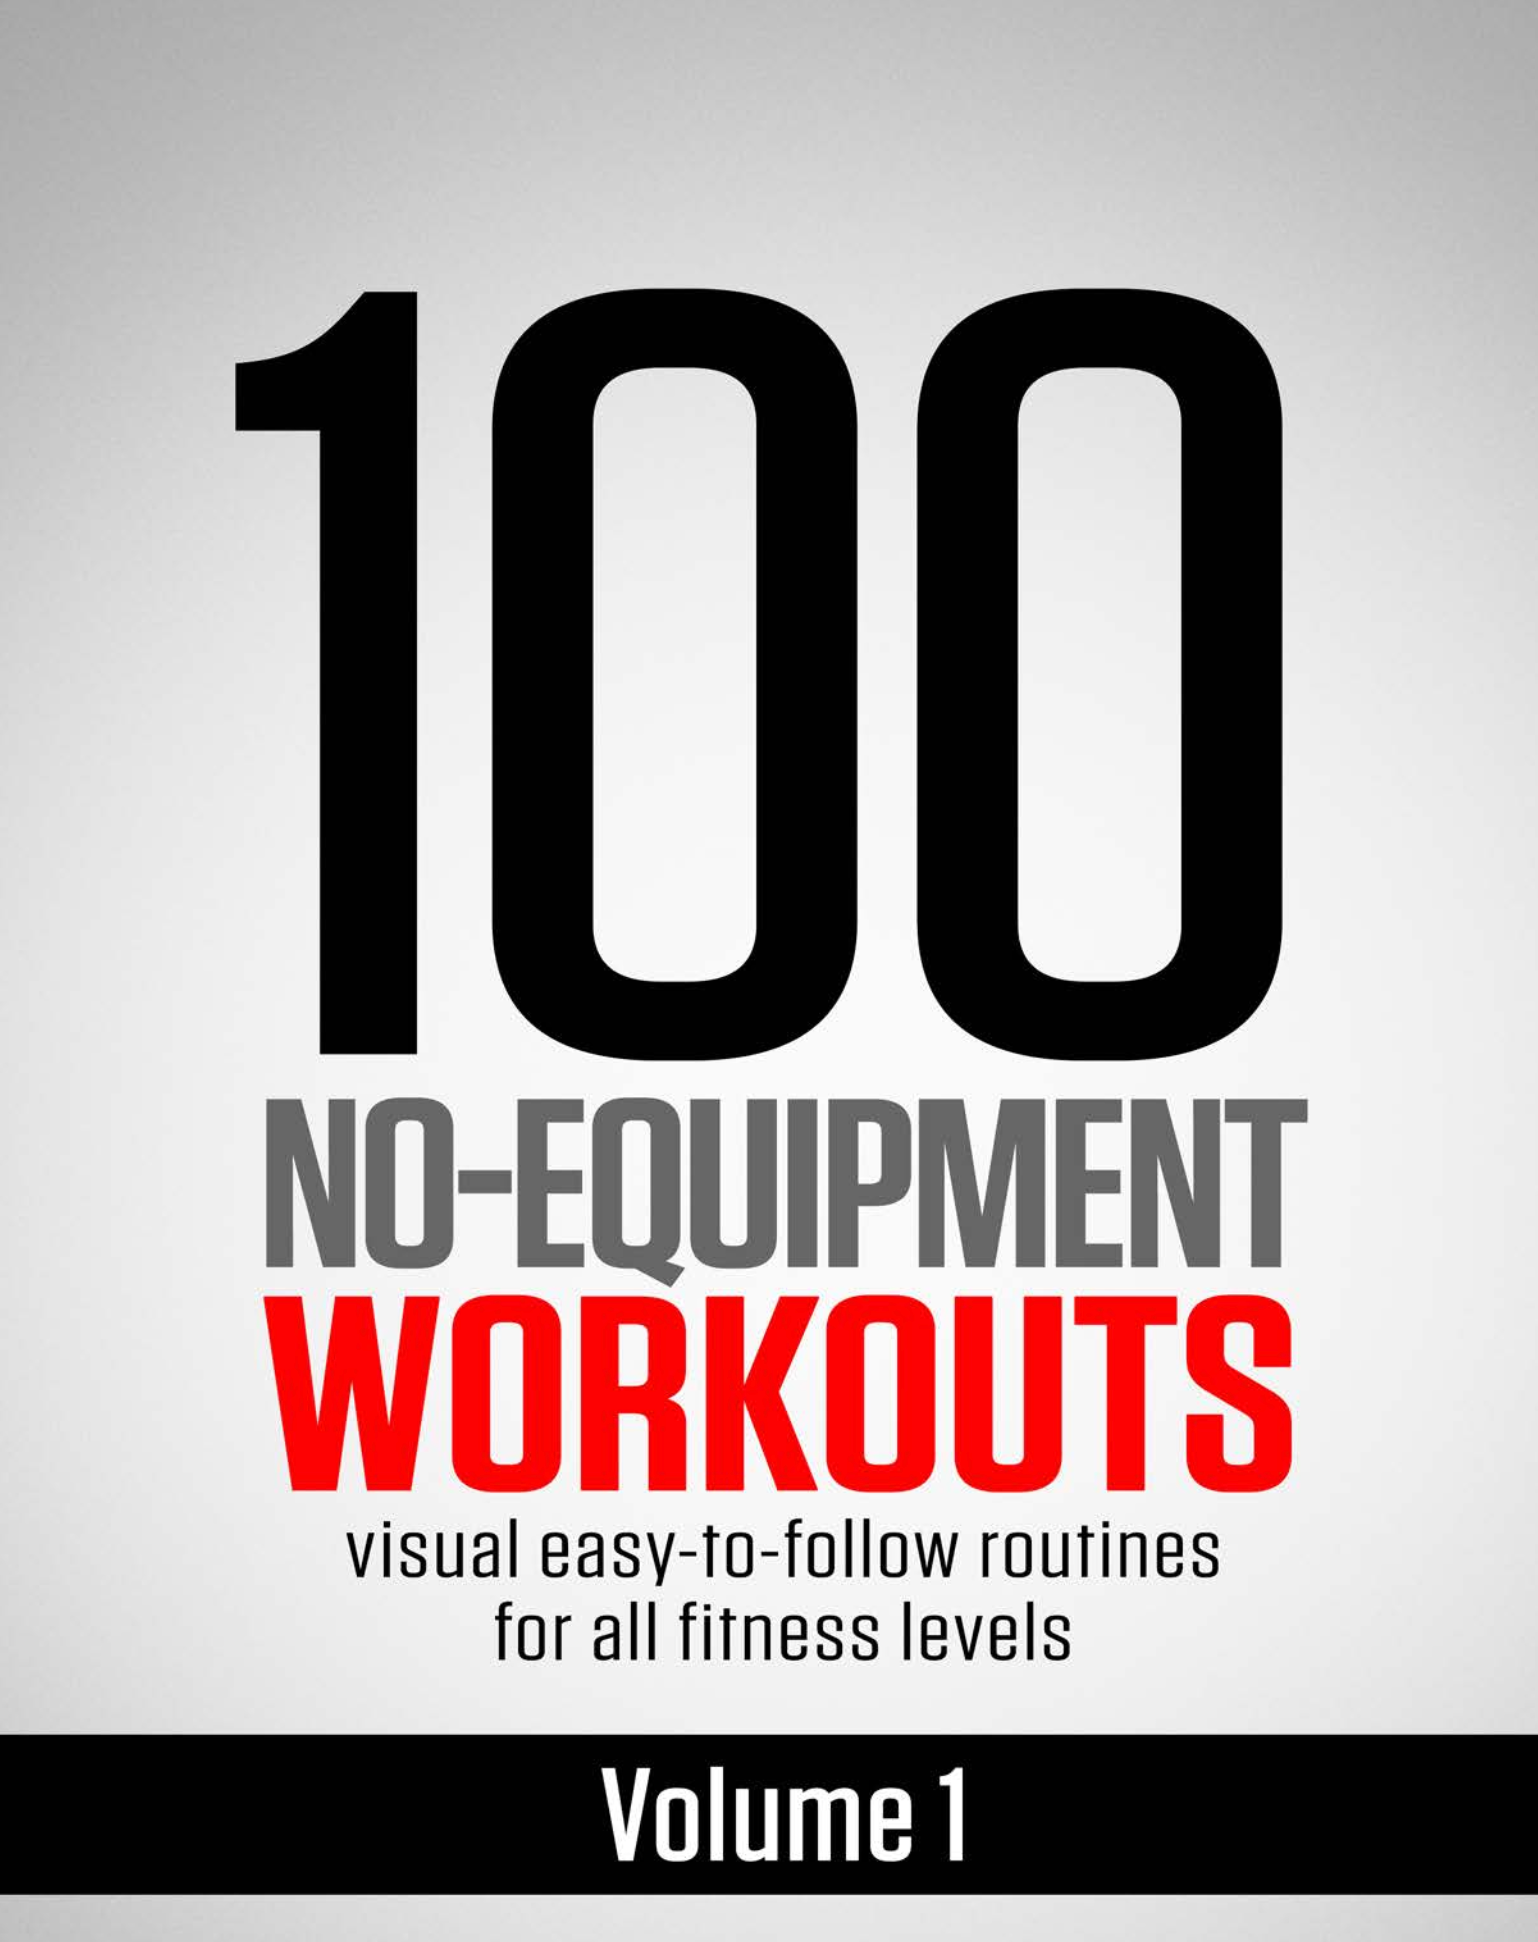 Vol 1. 100 No-Equipment Workouts